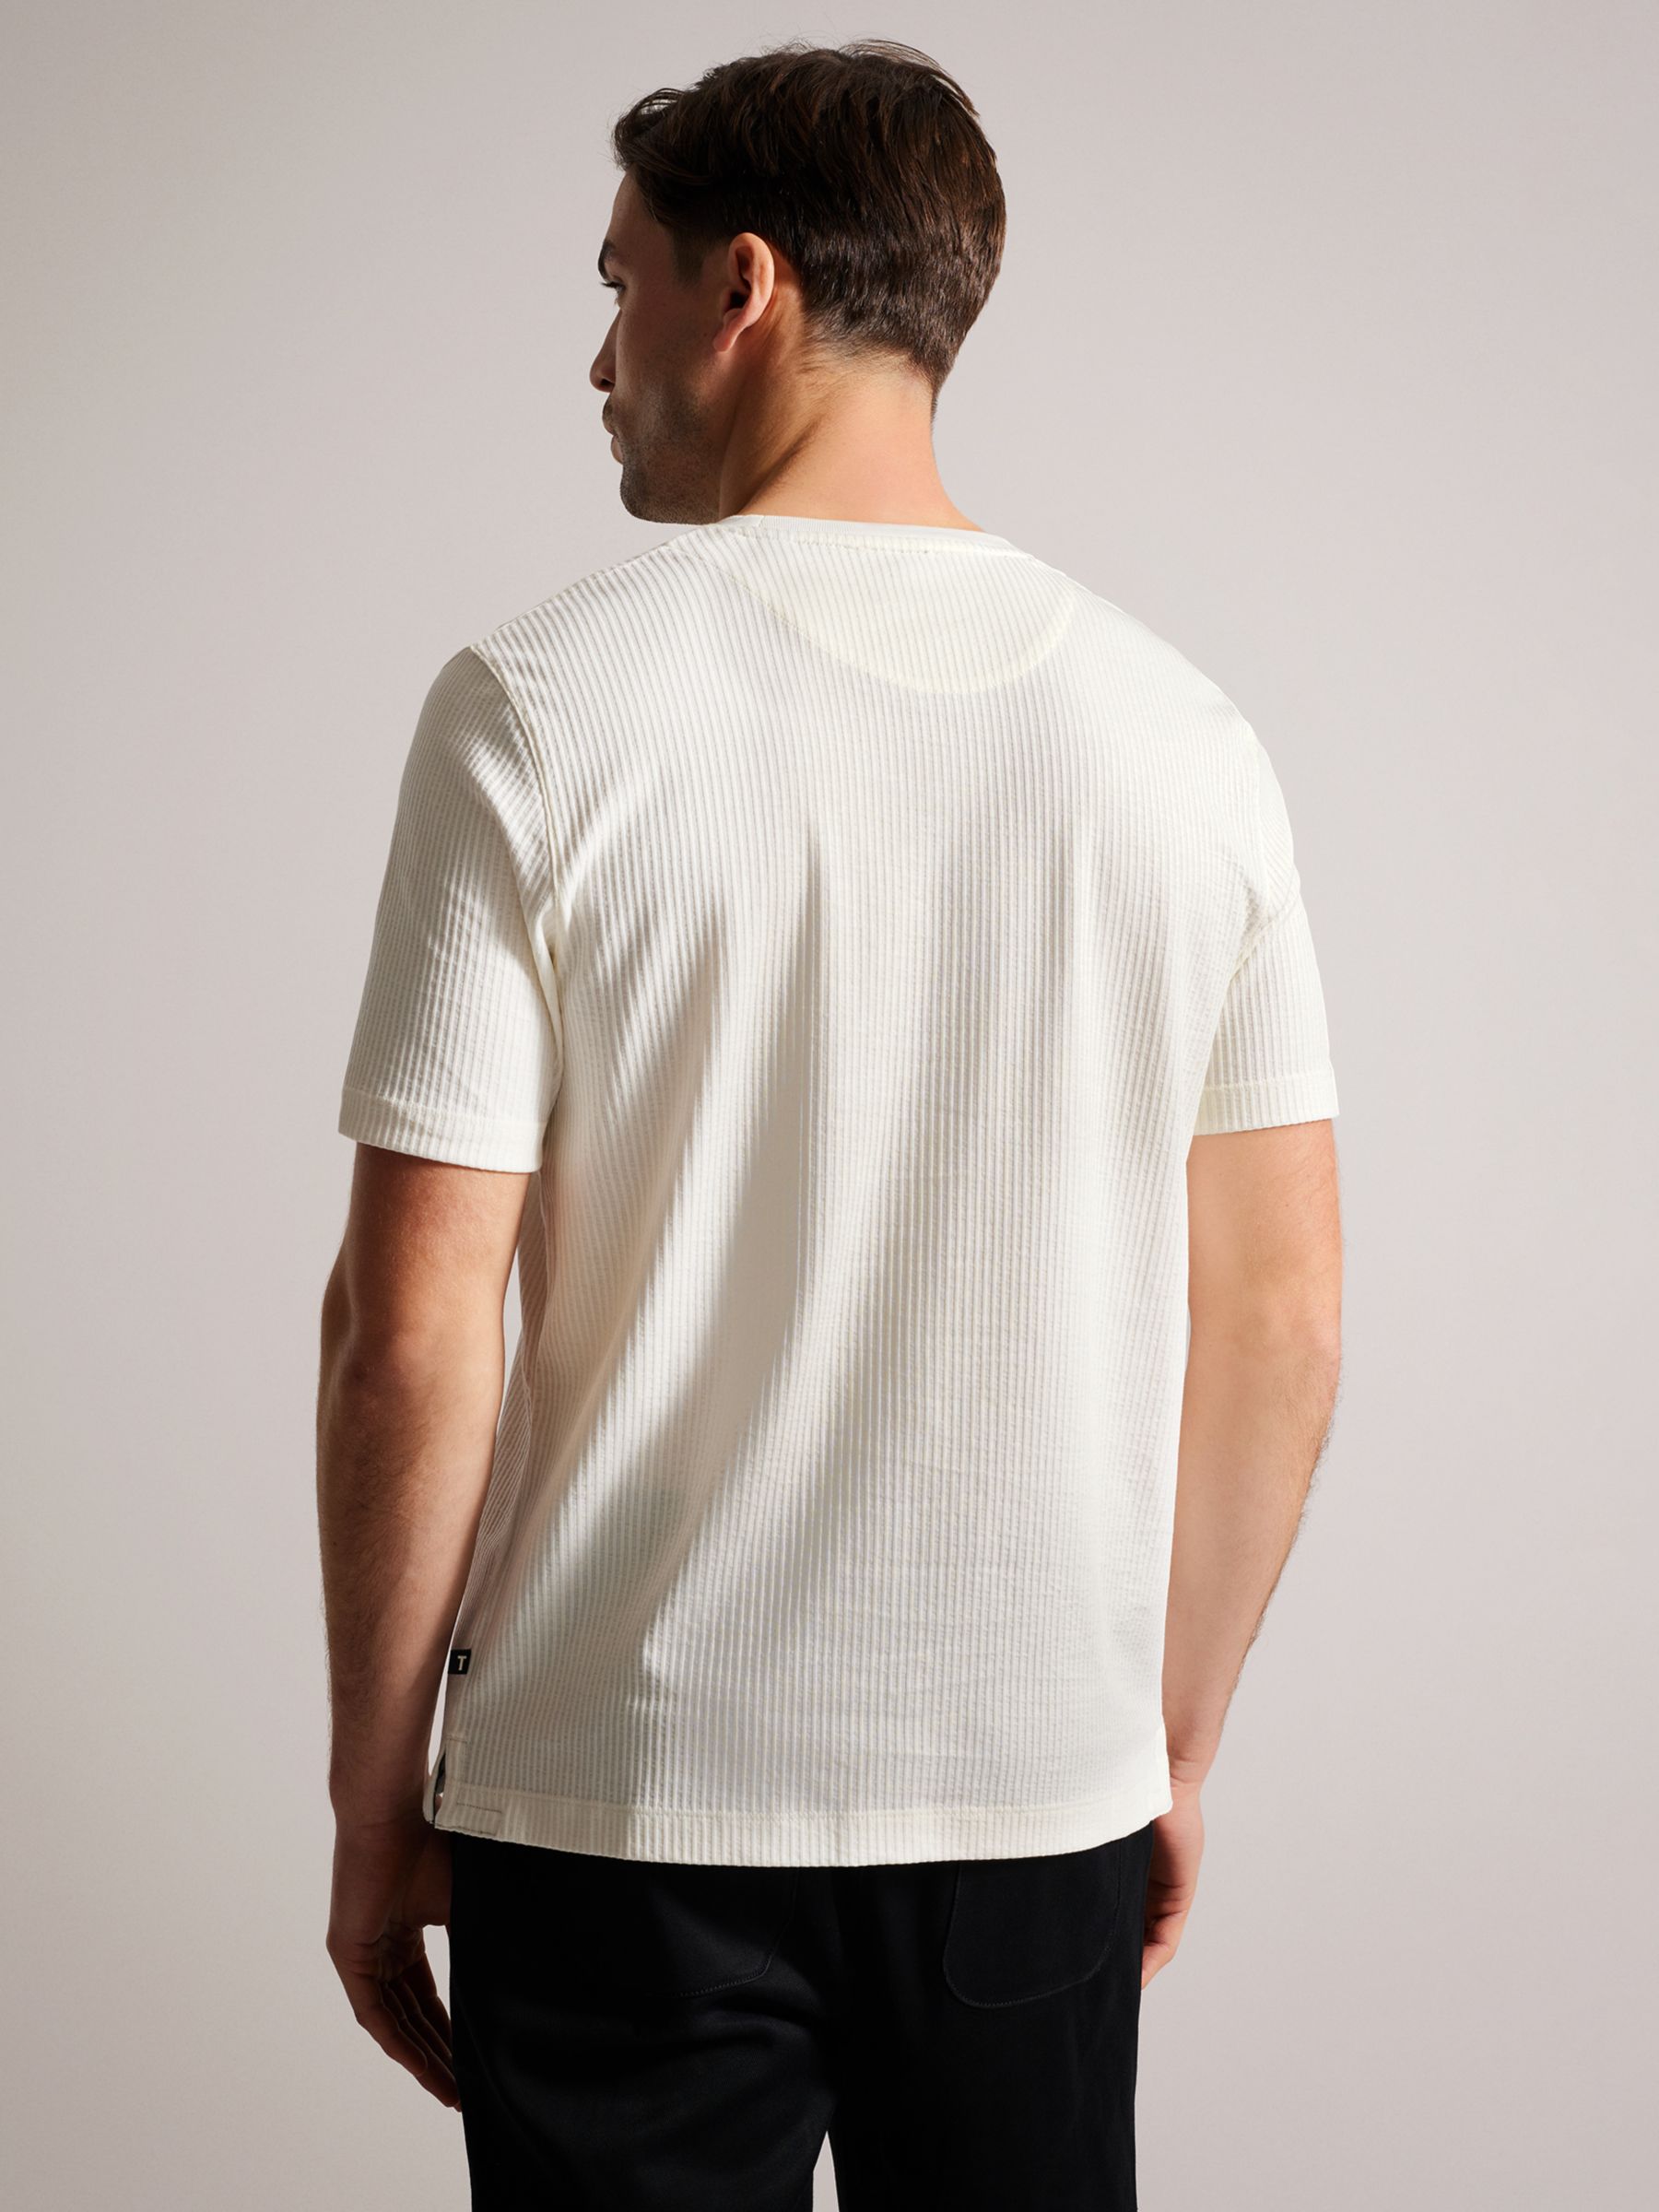 Ted Baker Rakes Textured T-Shirt, White, L